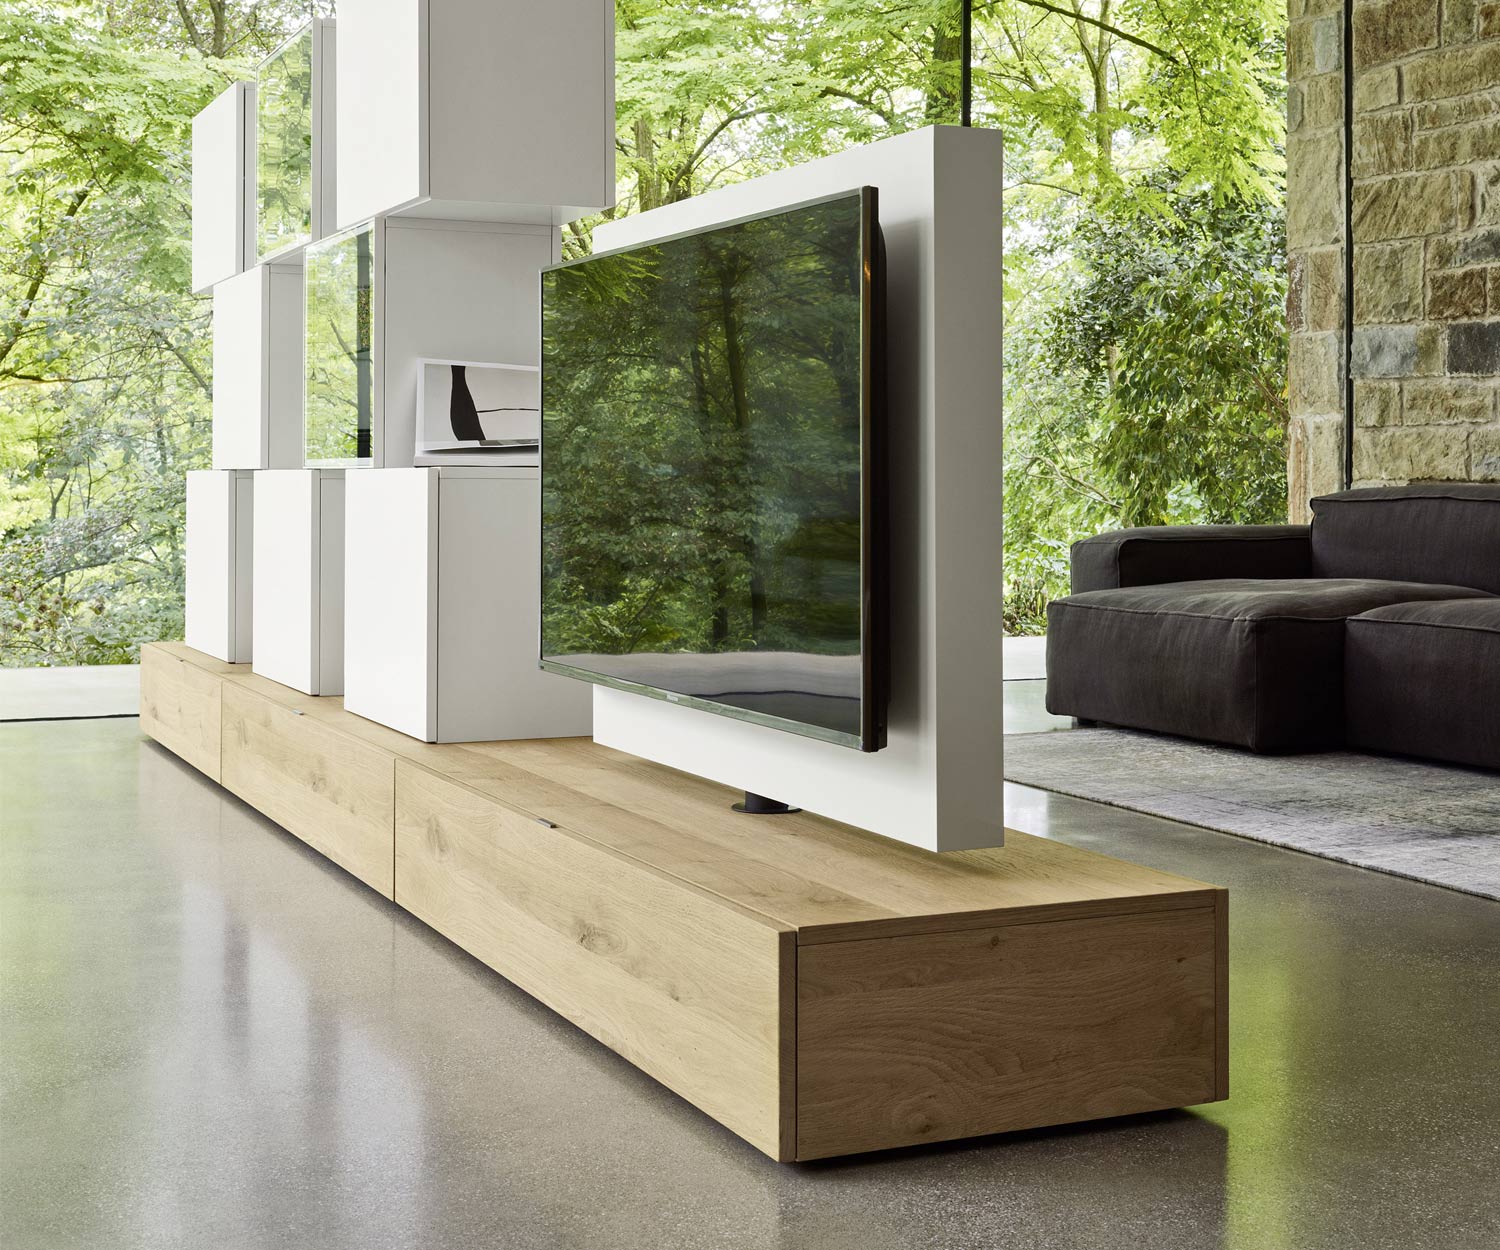 Exclusief Livitalia Roto Design Lowboard kamerscherm met draaibaar TV-paneel